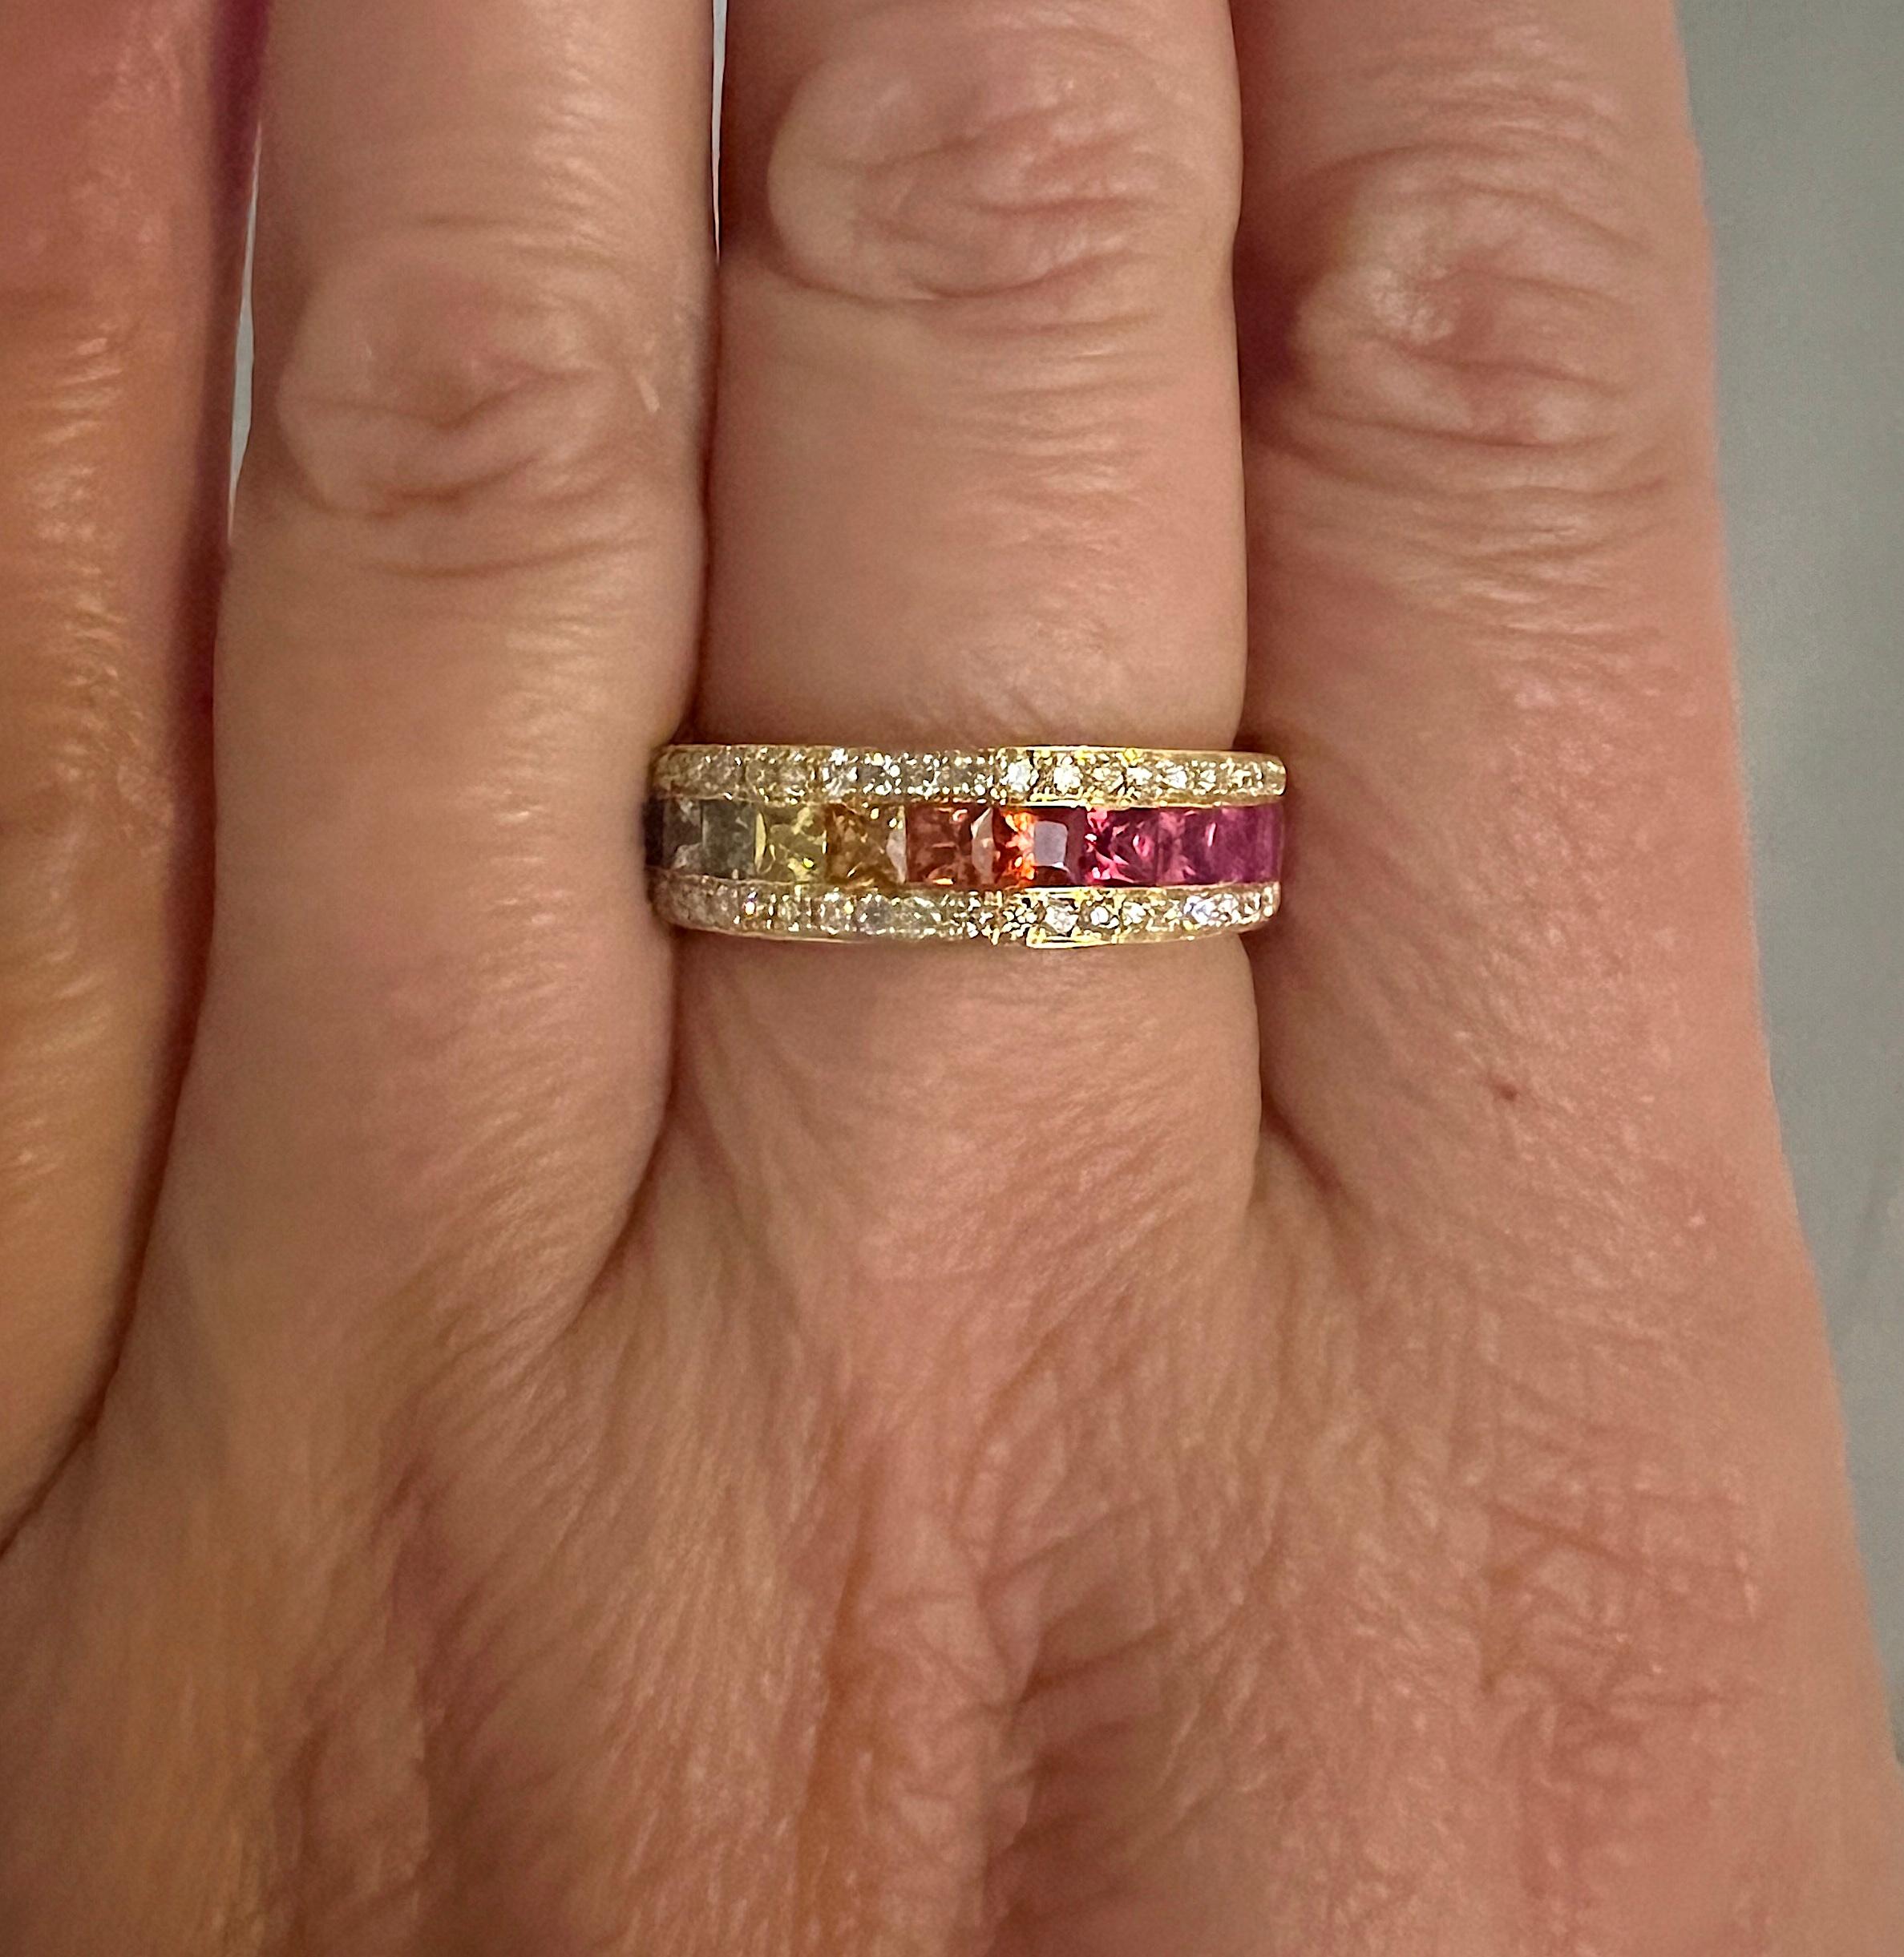 S. Georgios Designer bietet 18 Karat Gelbgold Band Ring mit 1,7 Karat Prinzess-Schliff Multicolor Saphiren in einer unsichtbaren Einstellung Schaffung eines schönen Regenbogens gesetzt. An den Rändern einer Kanalfassung befinden sich zwei Reihen